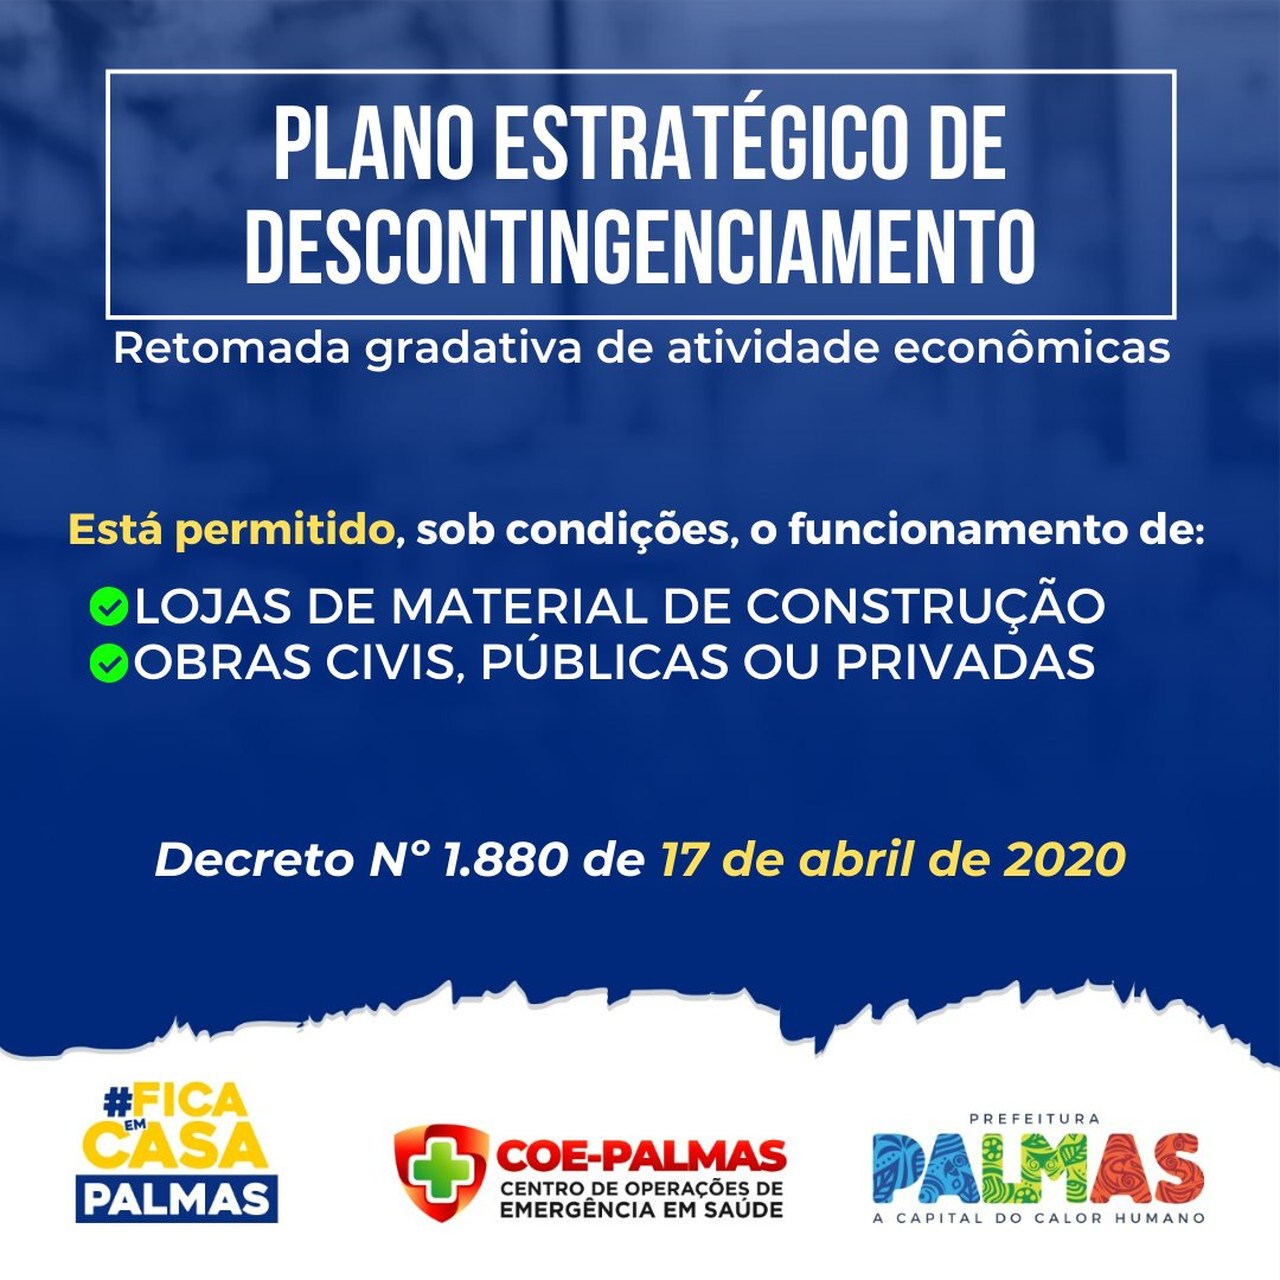 Decreto em Palmas é alterado e agora permite retomada de obras e abertura de lojas de material de construção